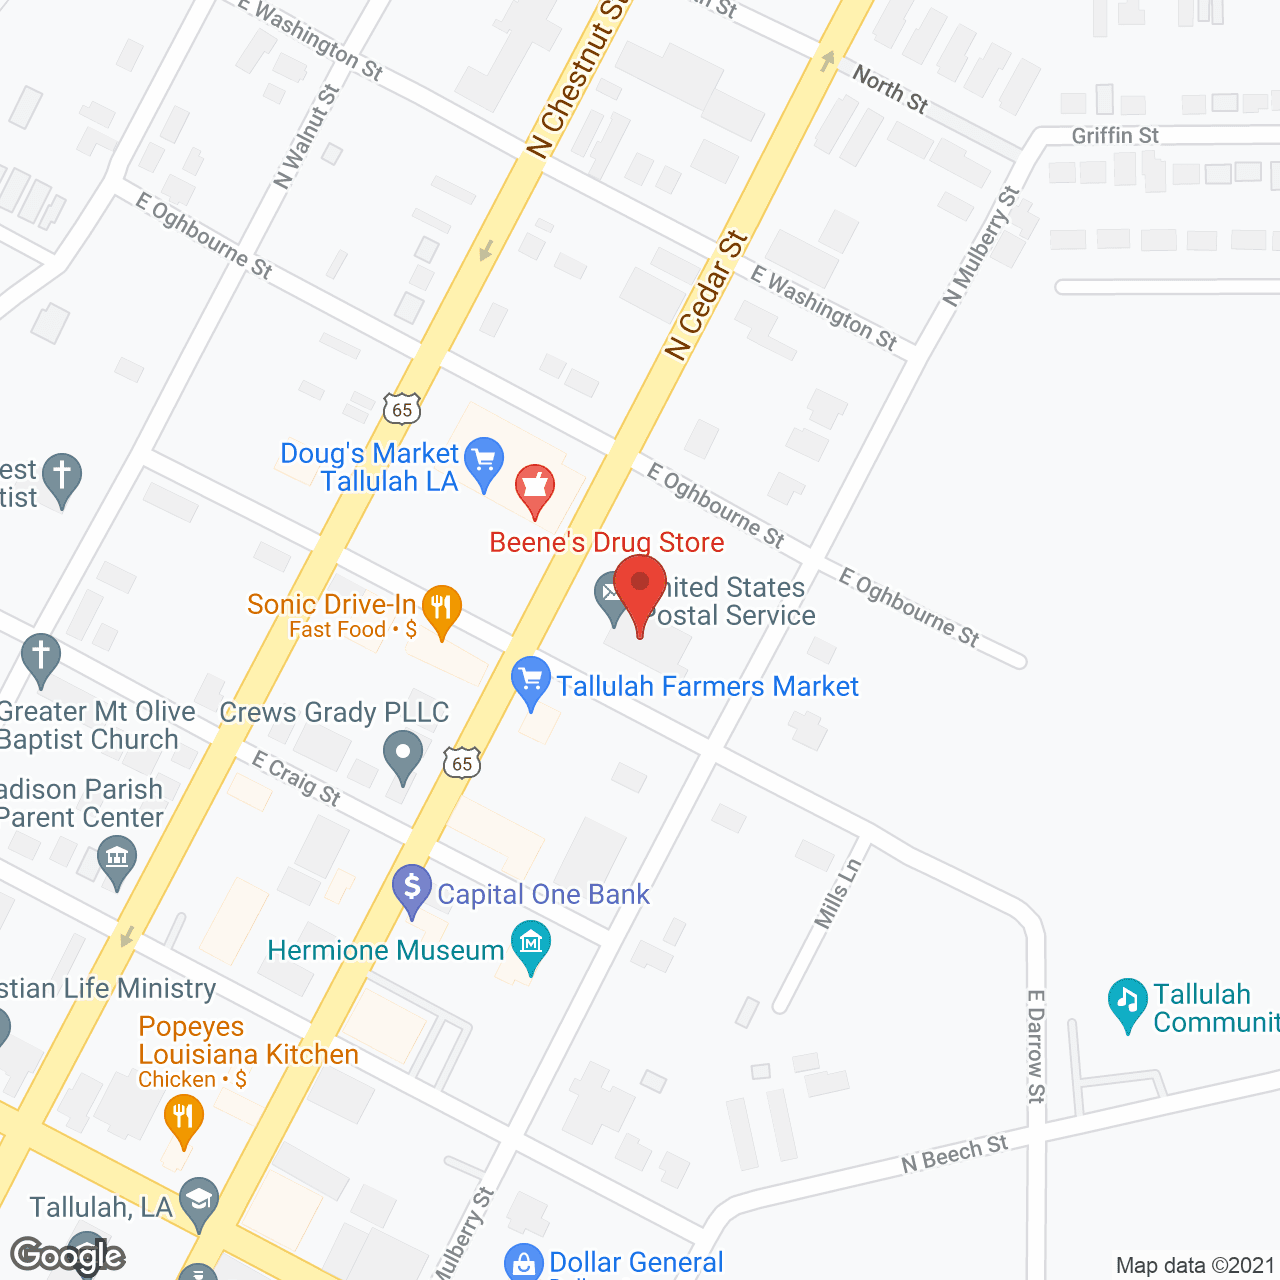 Madison Parish Nursing Home in google map